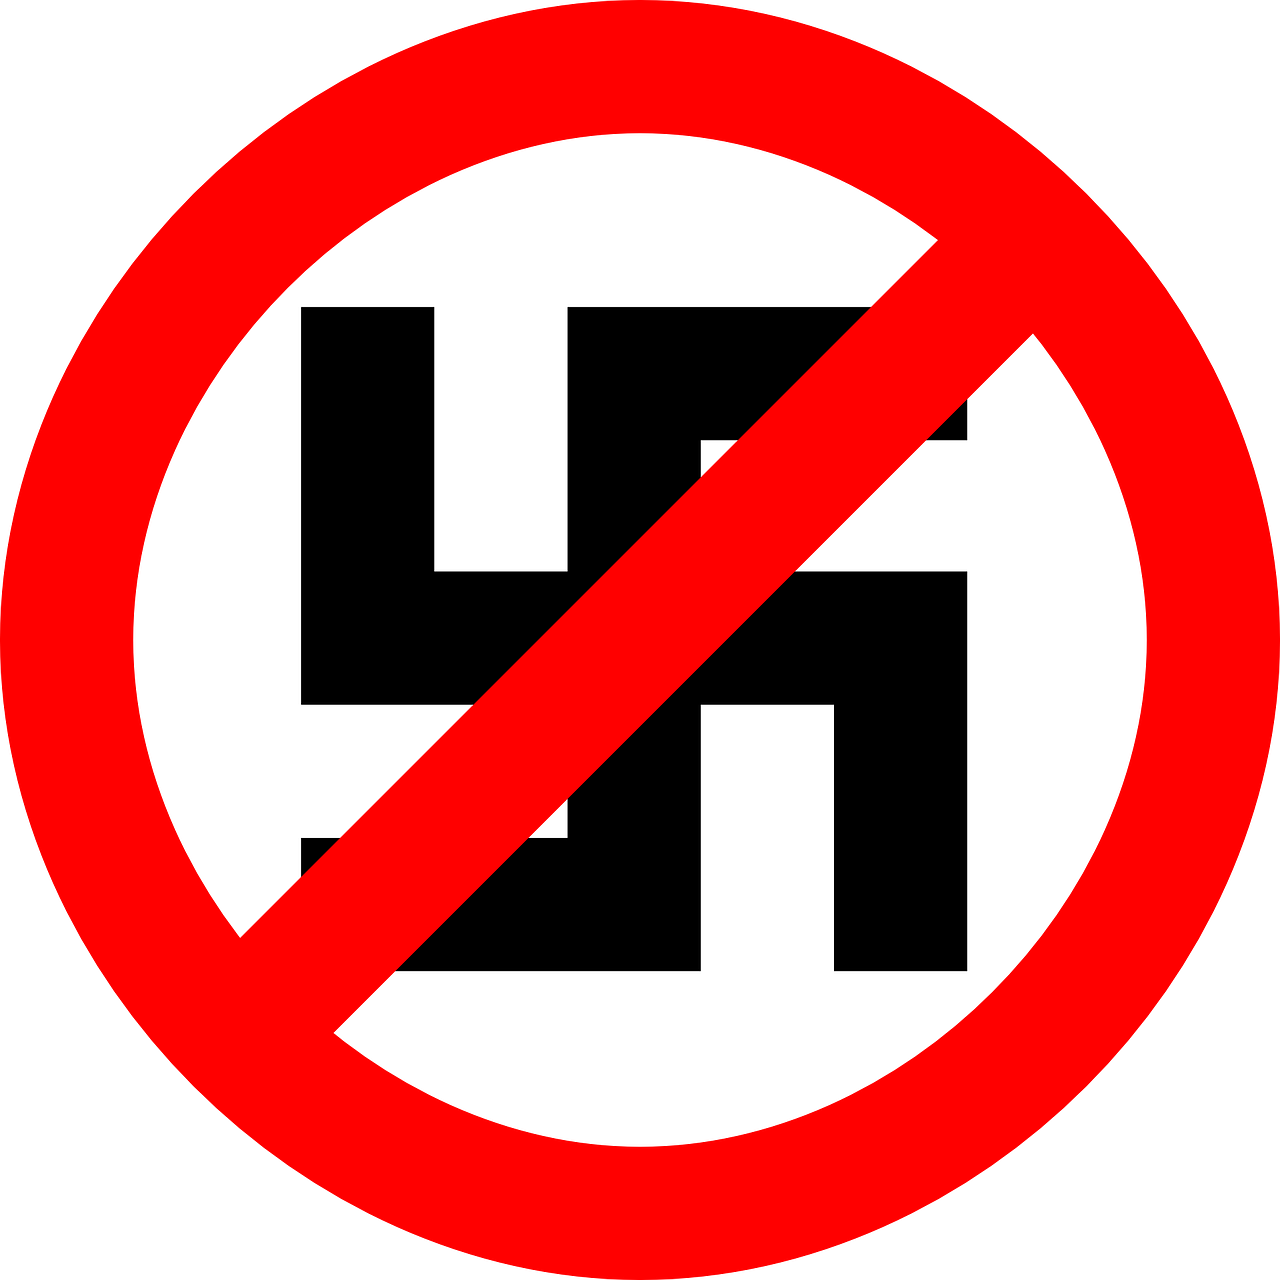 Swastika, Naciai, Simboliai, Logotipas, Anti, Kirto, Istorija, Vokietija, Vokiečių, Genocidas